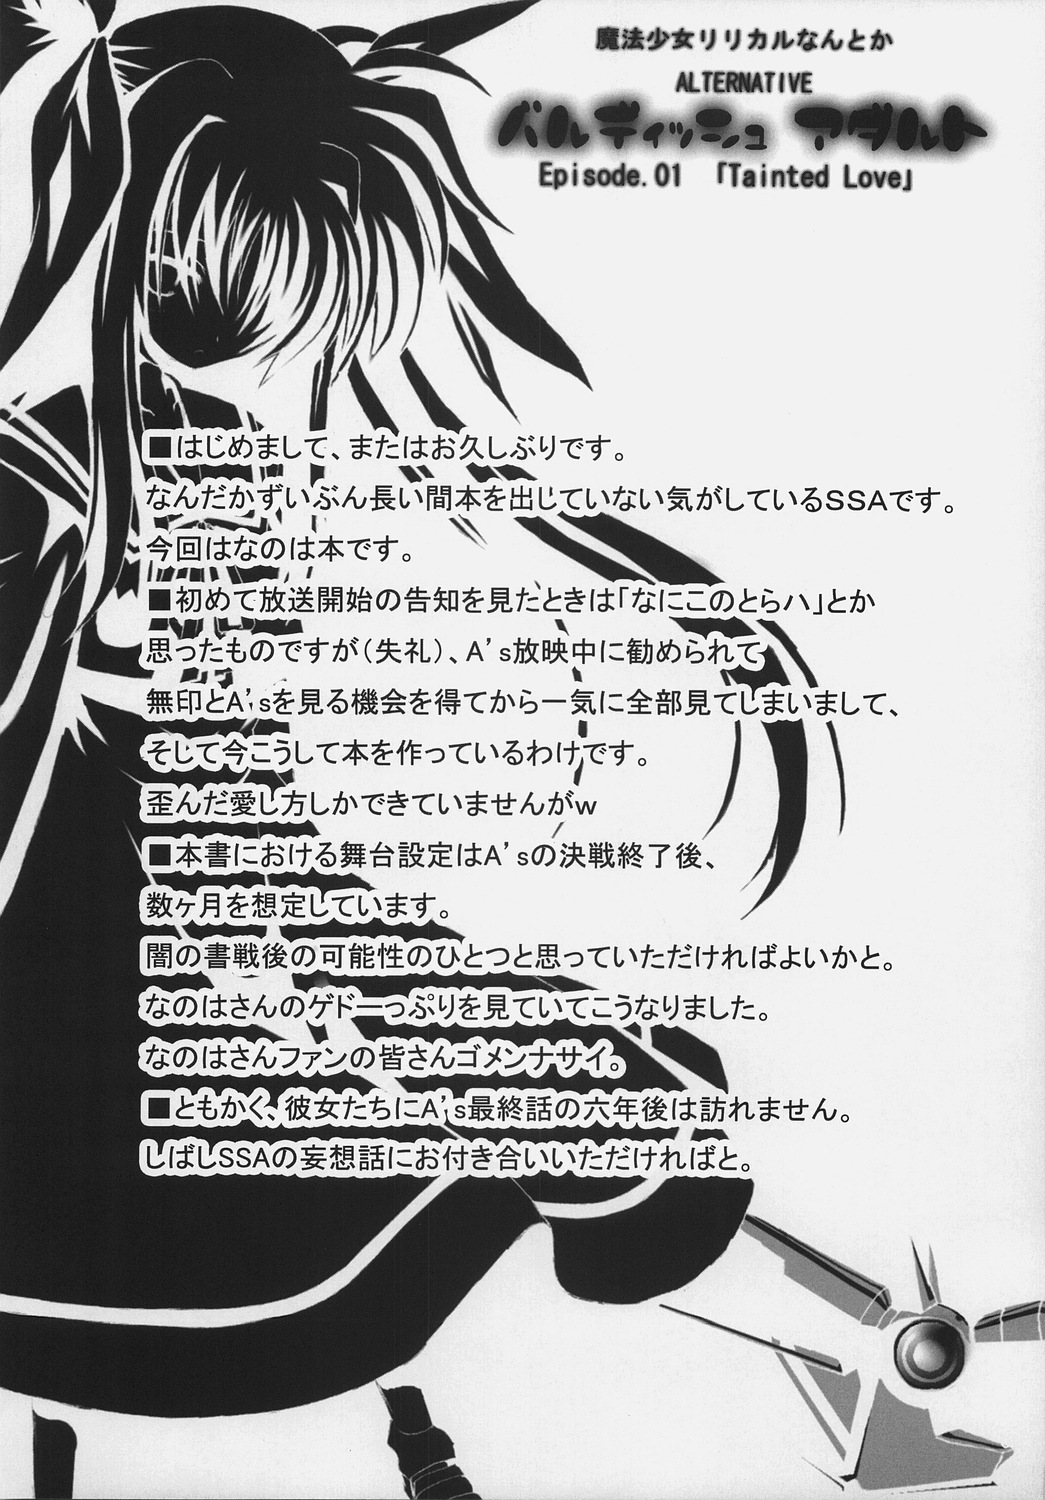 (コミックキャッスル2006) [SSB (SSA)] バルディッシュアダルト Episode.01 Tainted Love (魔法少女リリカルなのは)